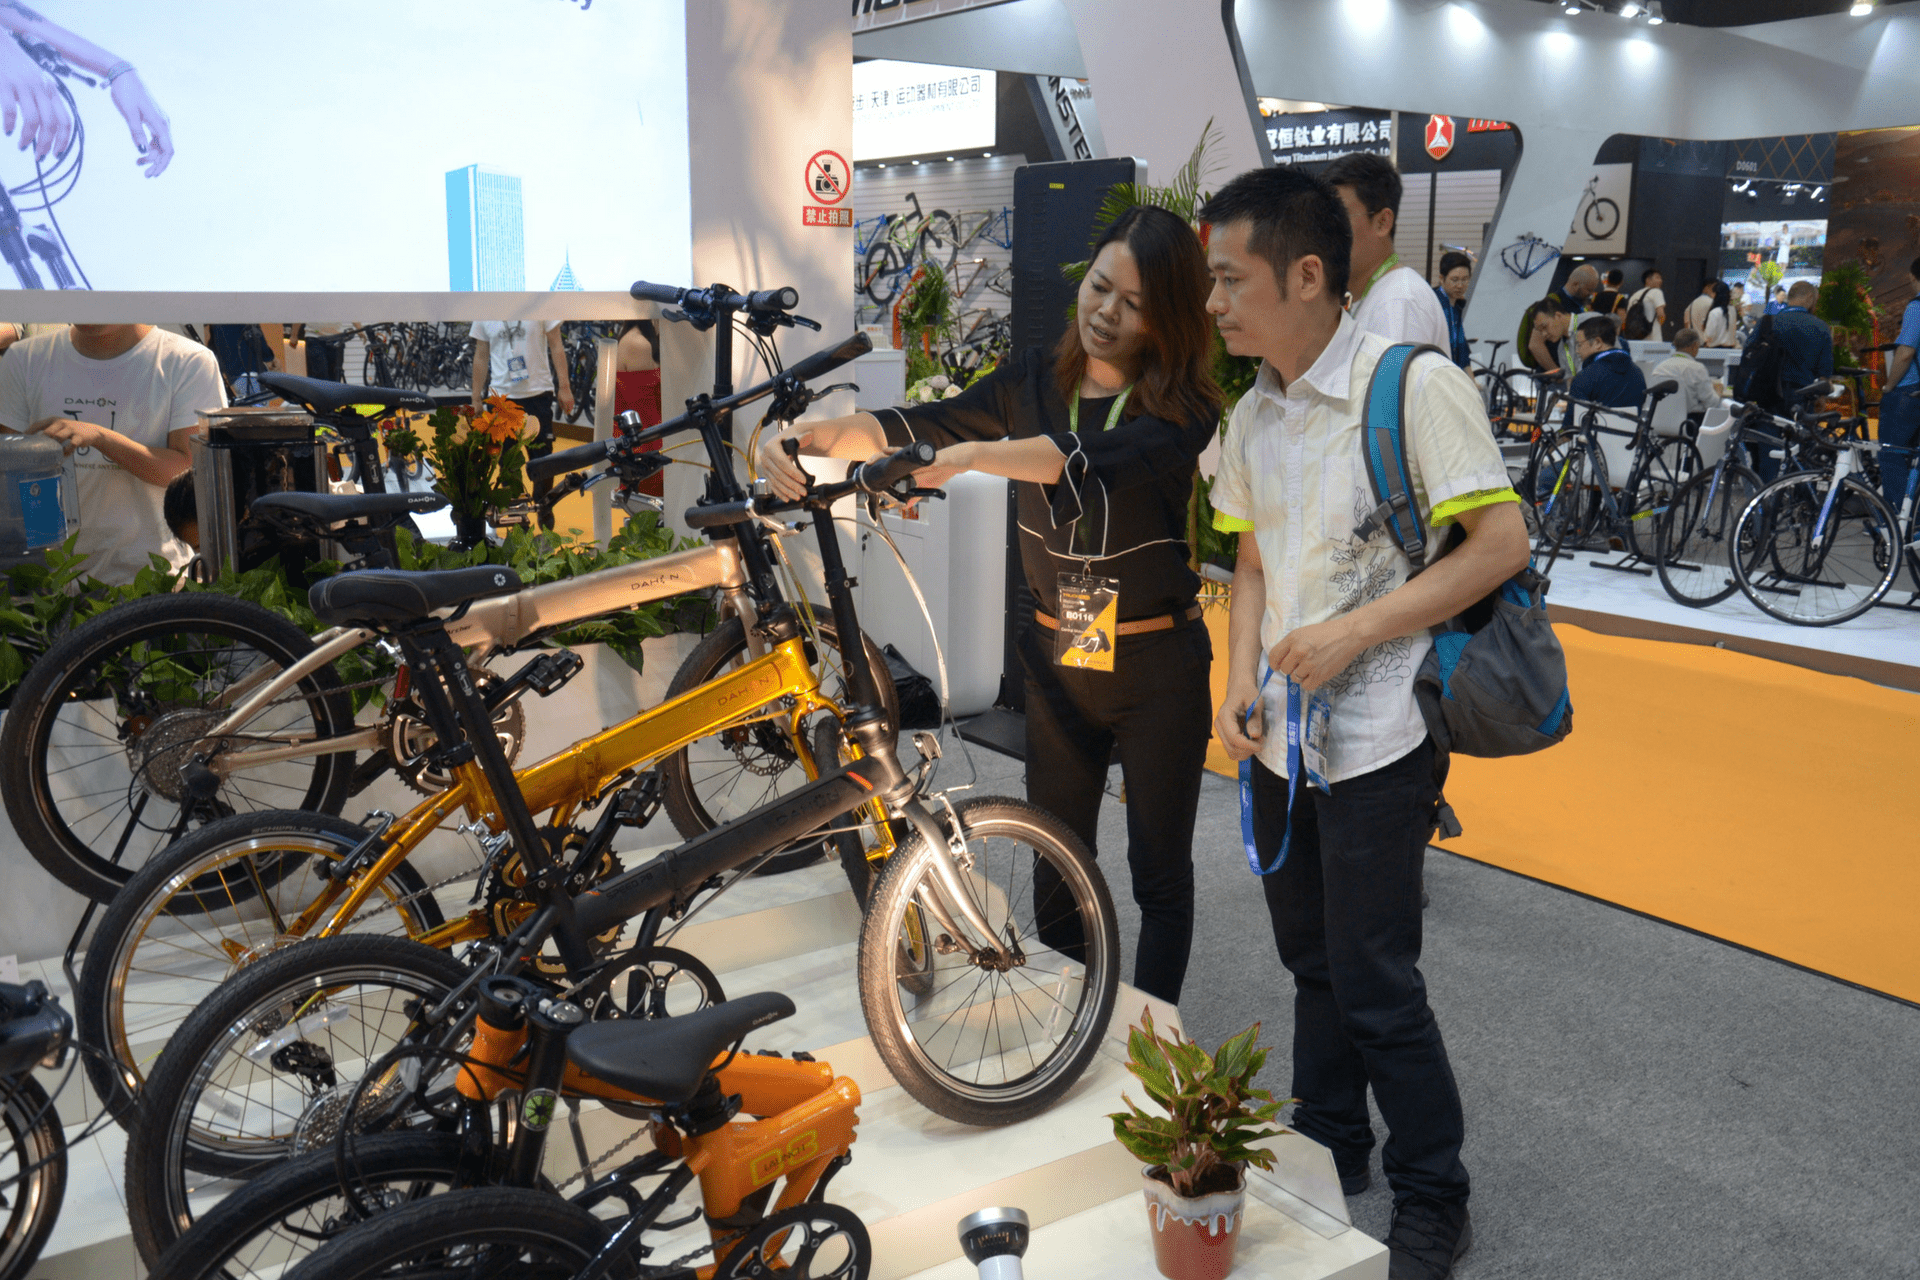 DAHON bike display at China Cycle 2018